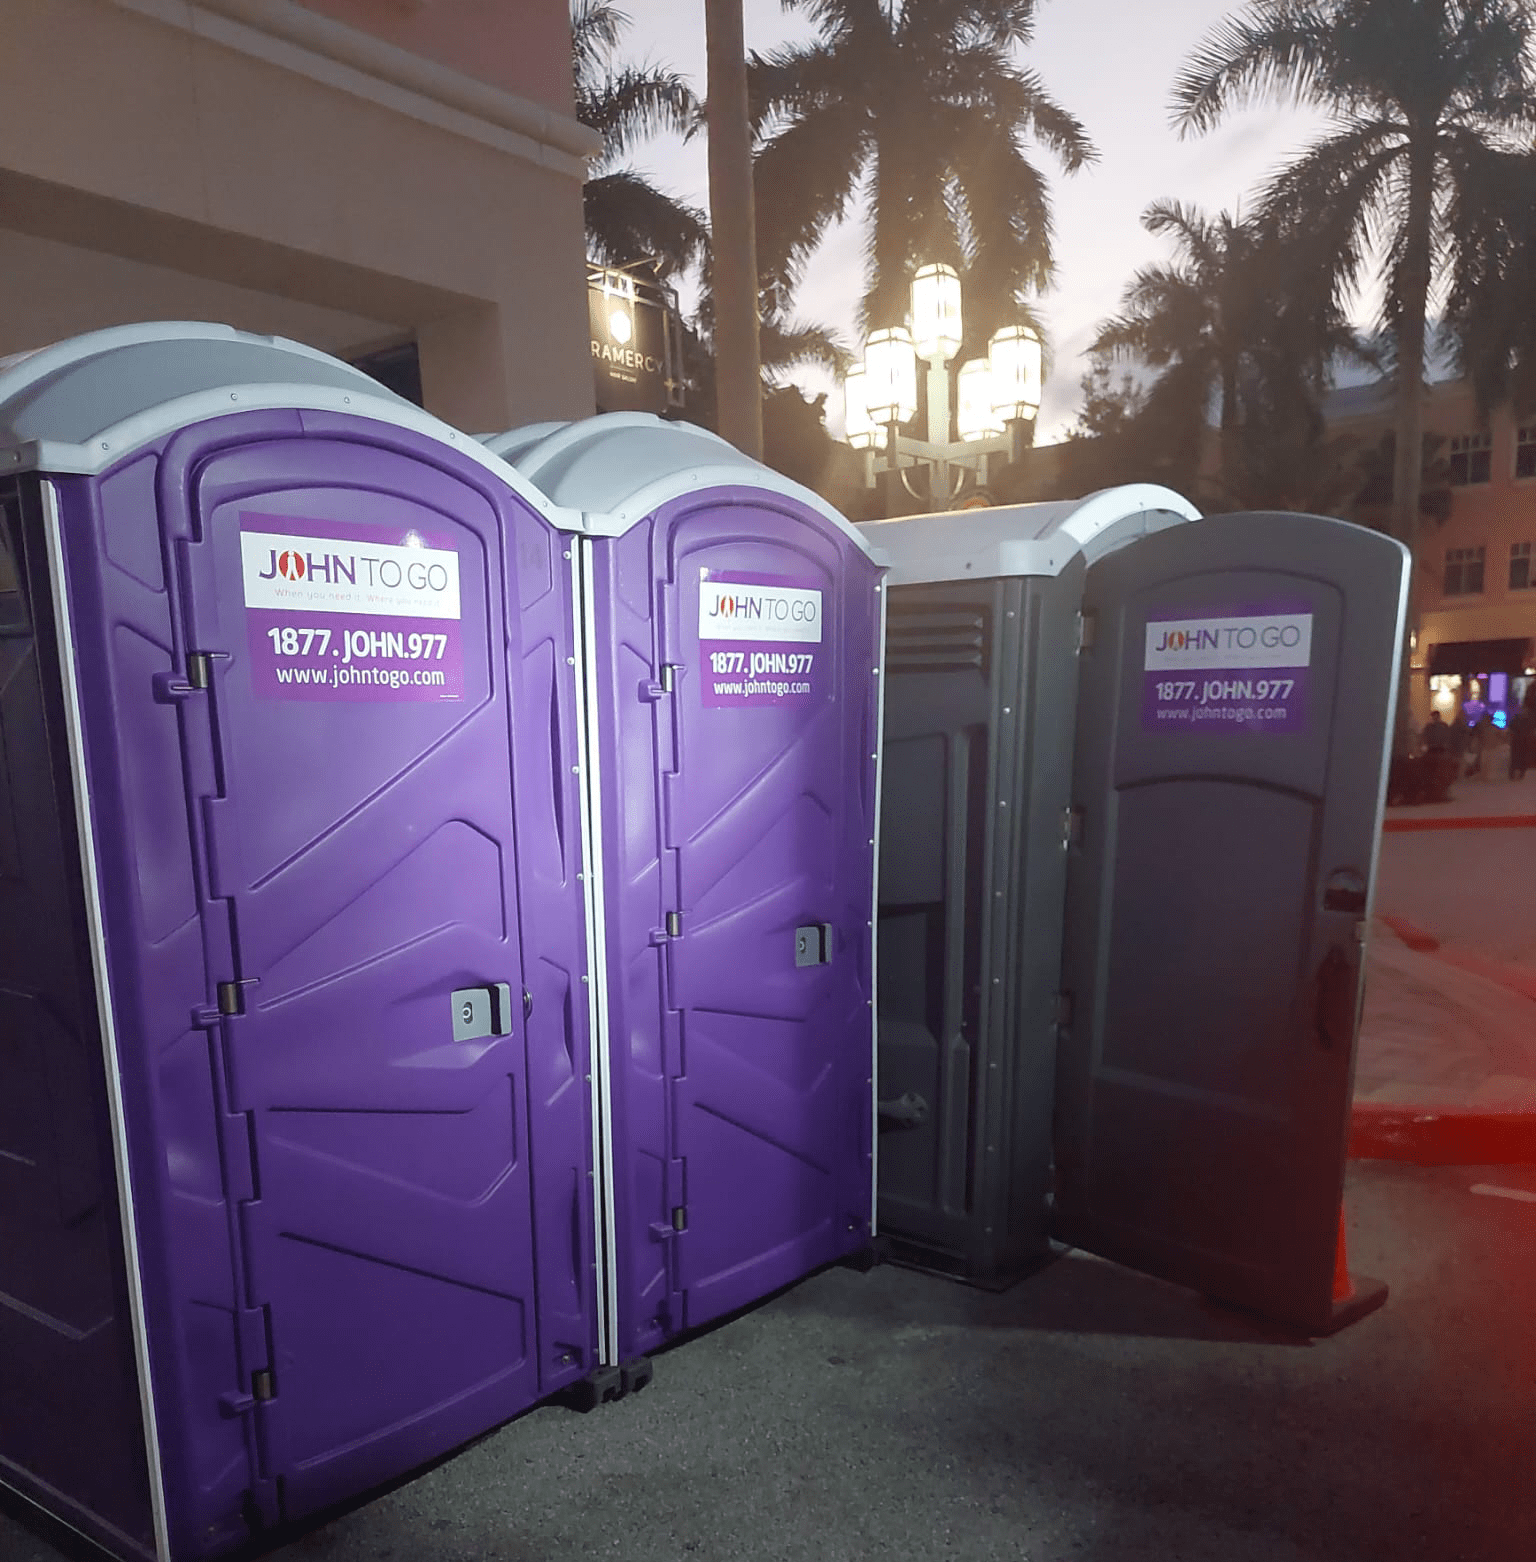 porta potty rentals at Boca Raton events